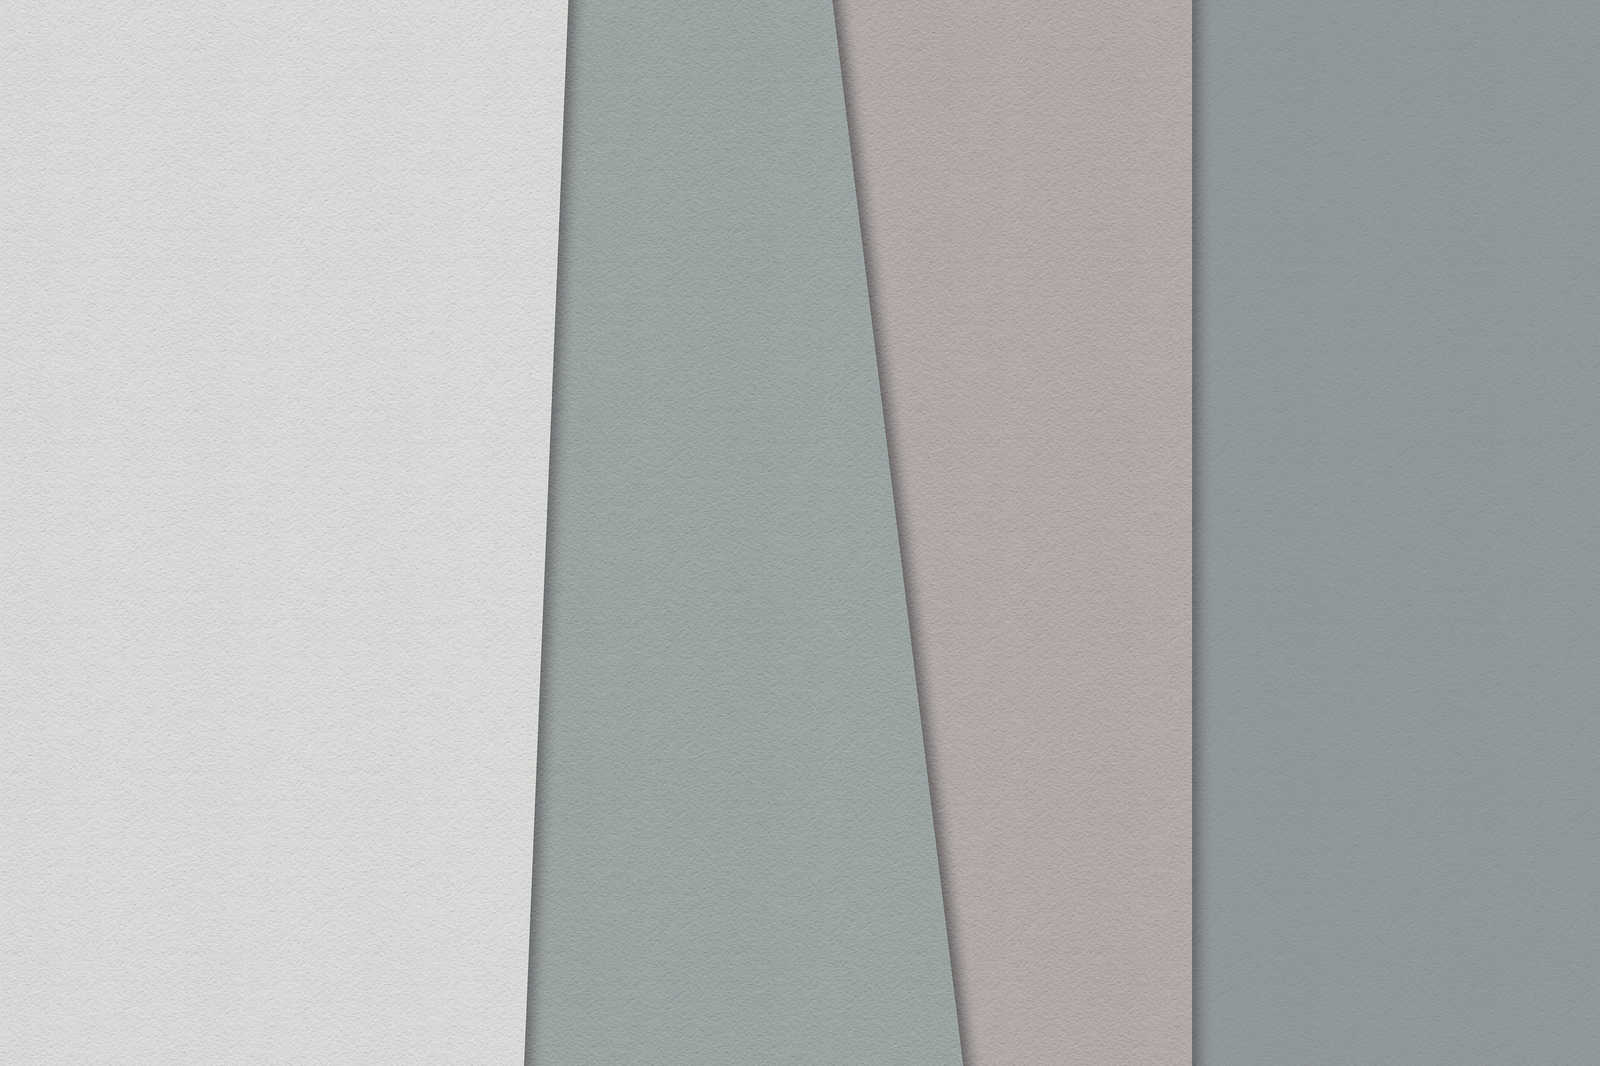             Layered paper 1 - Toile graphique avec aplats de couleurs en structure de papier à la cuve - 1,20 m x 0,80 m
        